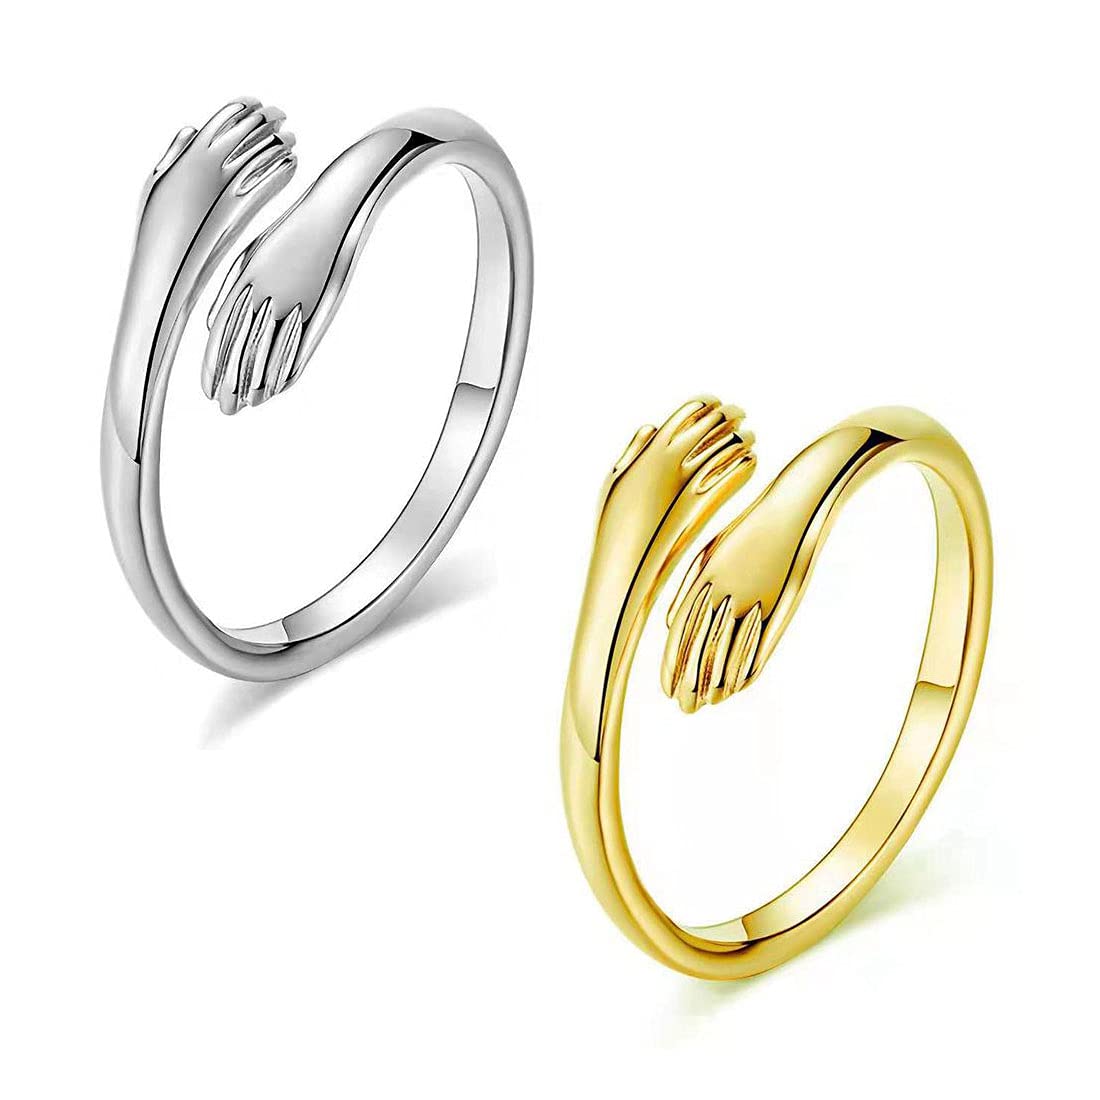 Designer Rings for Women - Silver & Gold Finish